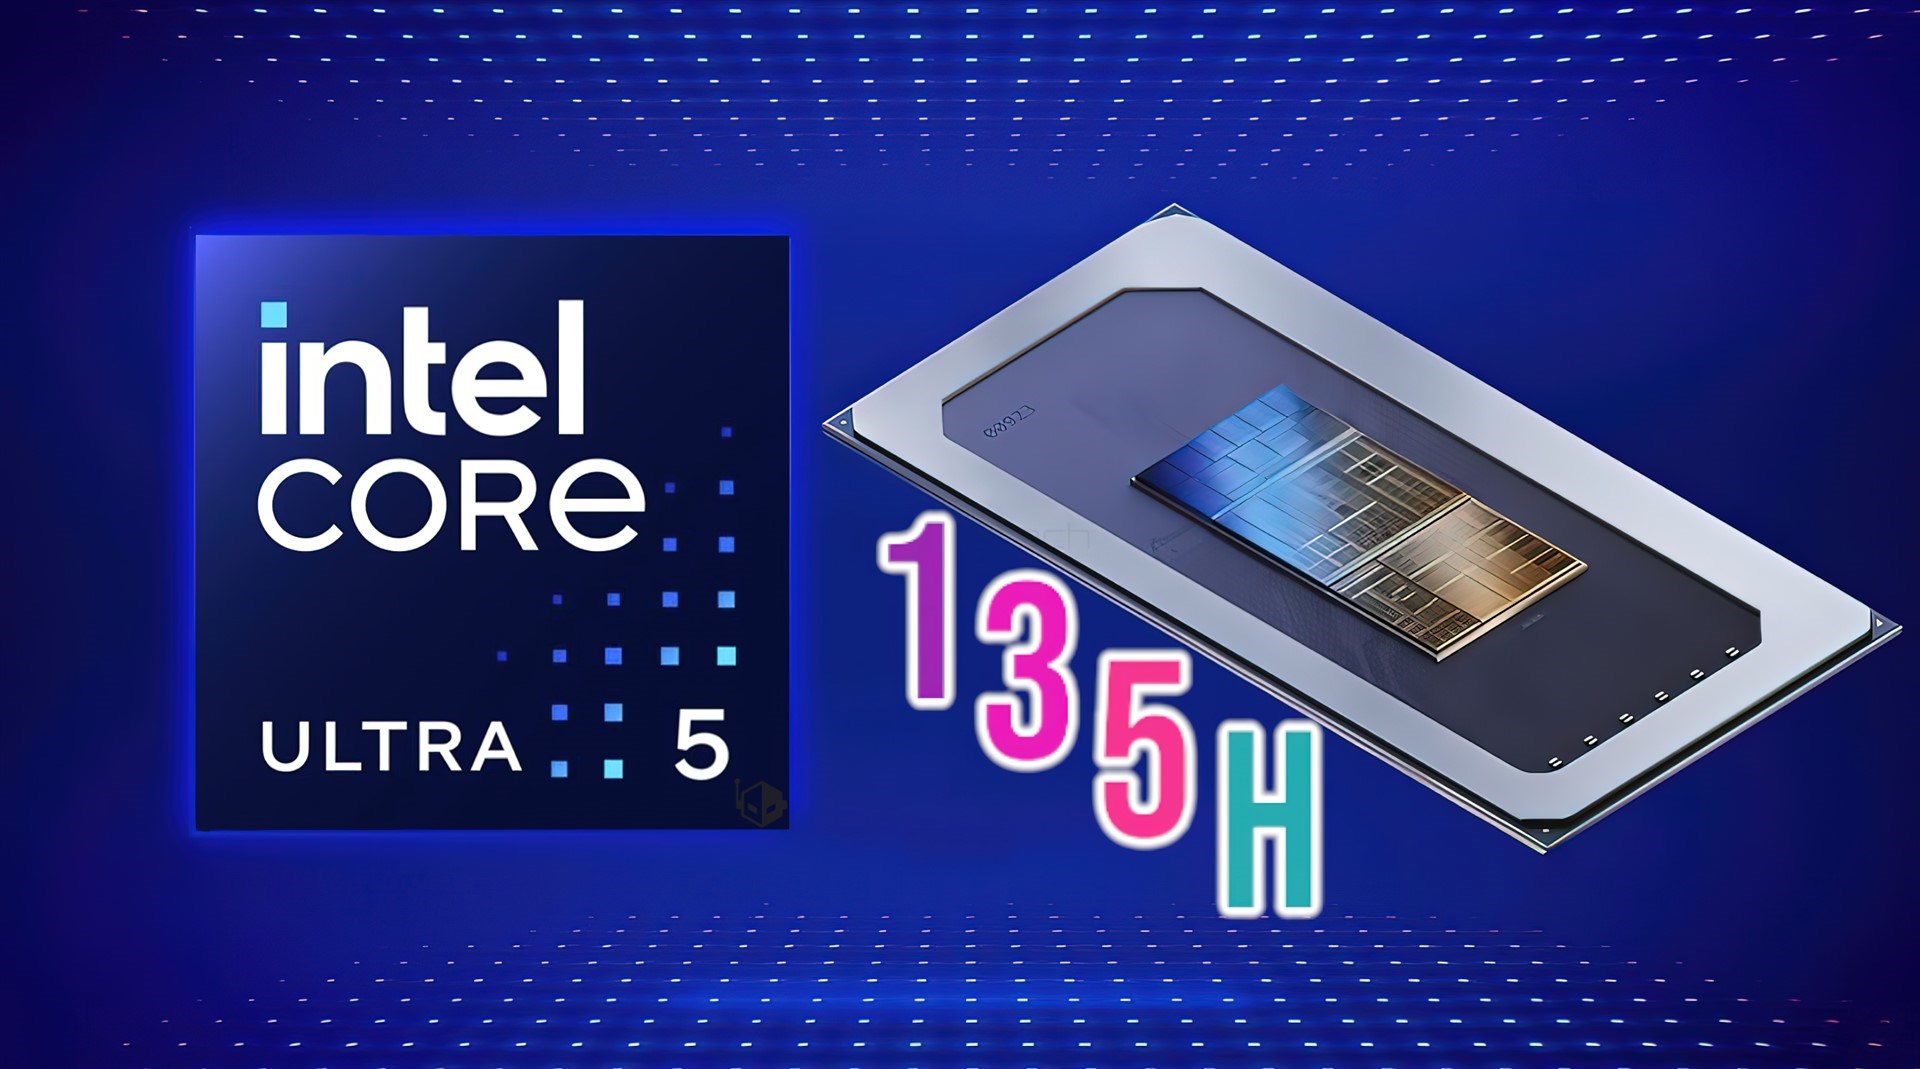 Intel Core Ultra 5 135H, performansta AMD’yi geride bırakıyor